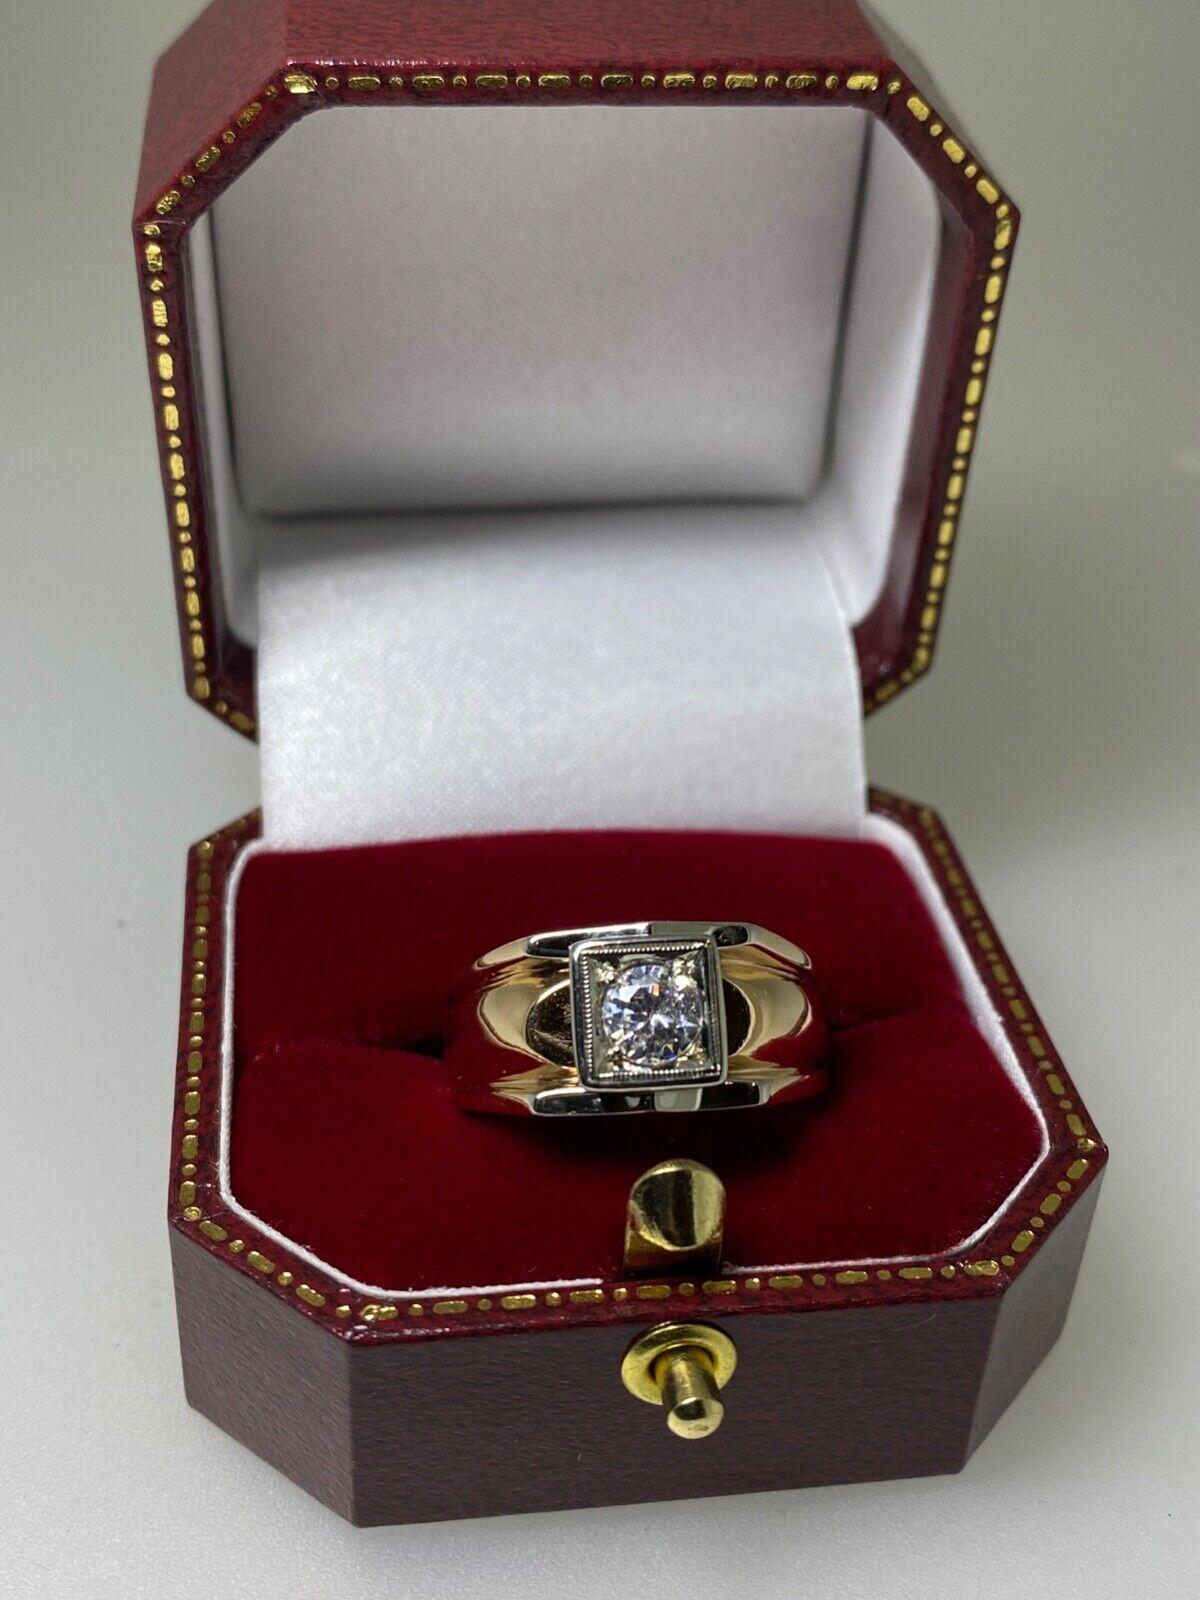 Mit einem auffälligen und komfortablen Design, 
Dieser handgefertigte Retro-Ring für Männer stammt aus den 1950er Jahren.

Italienischer Herkunft, 
aus zweifarbigem 18K Weiß- und Roségold gefertigt 

Mittig mit einem runden Diamanten im